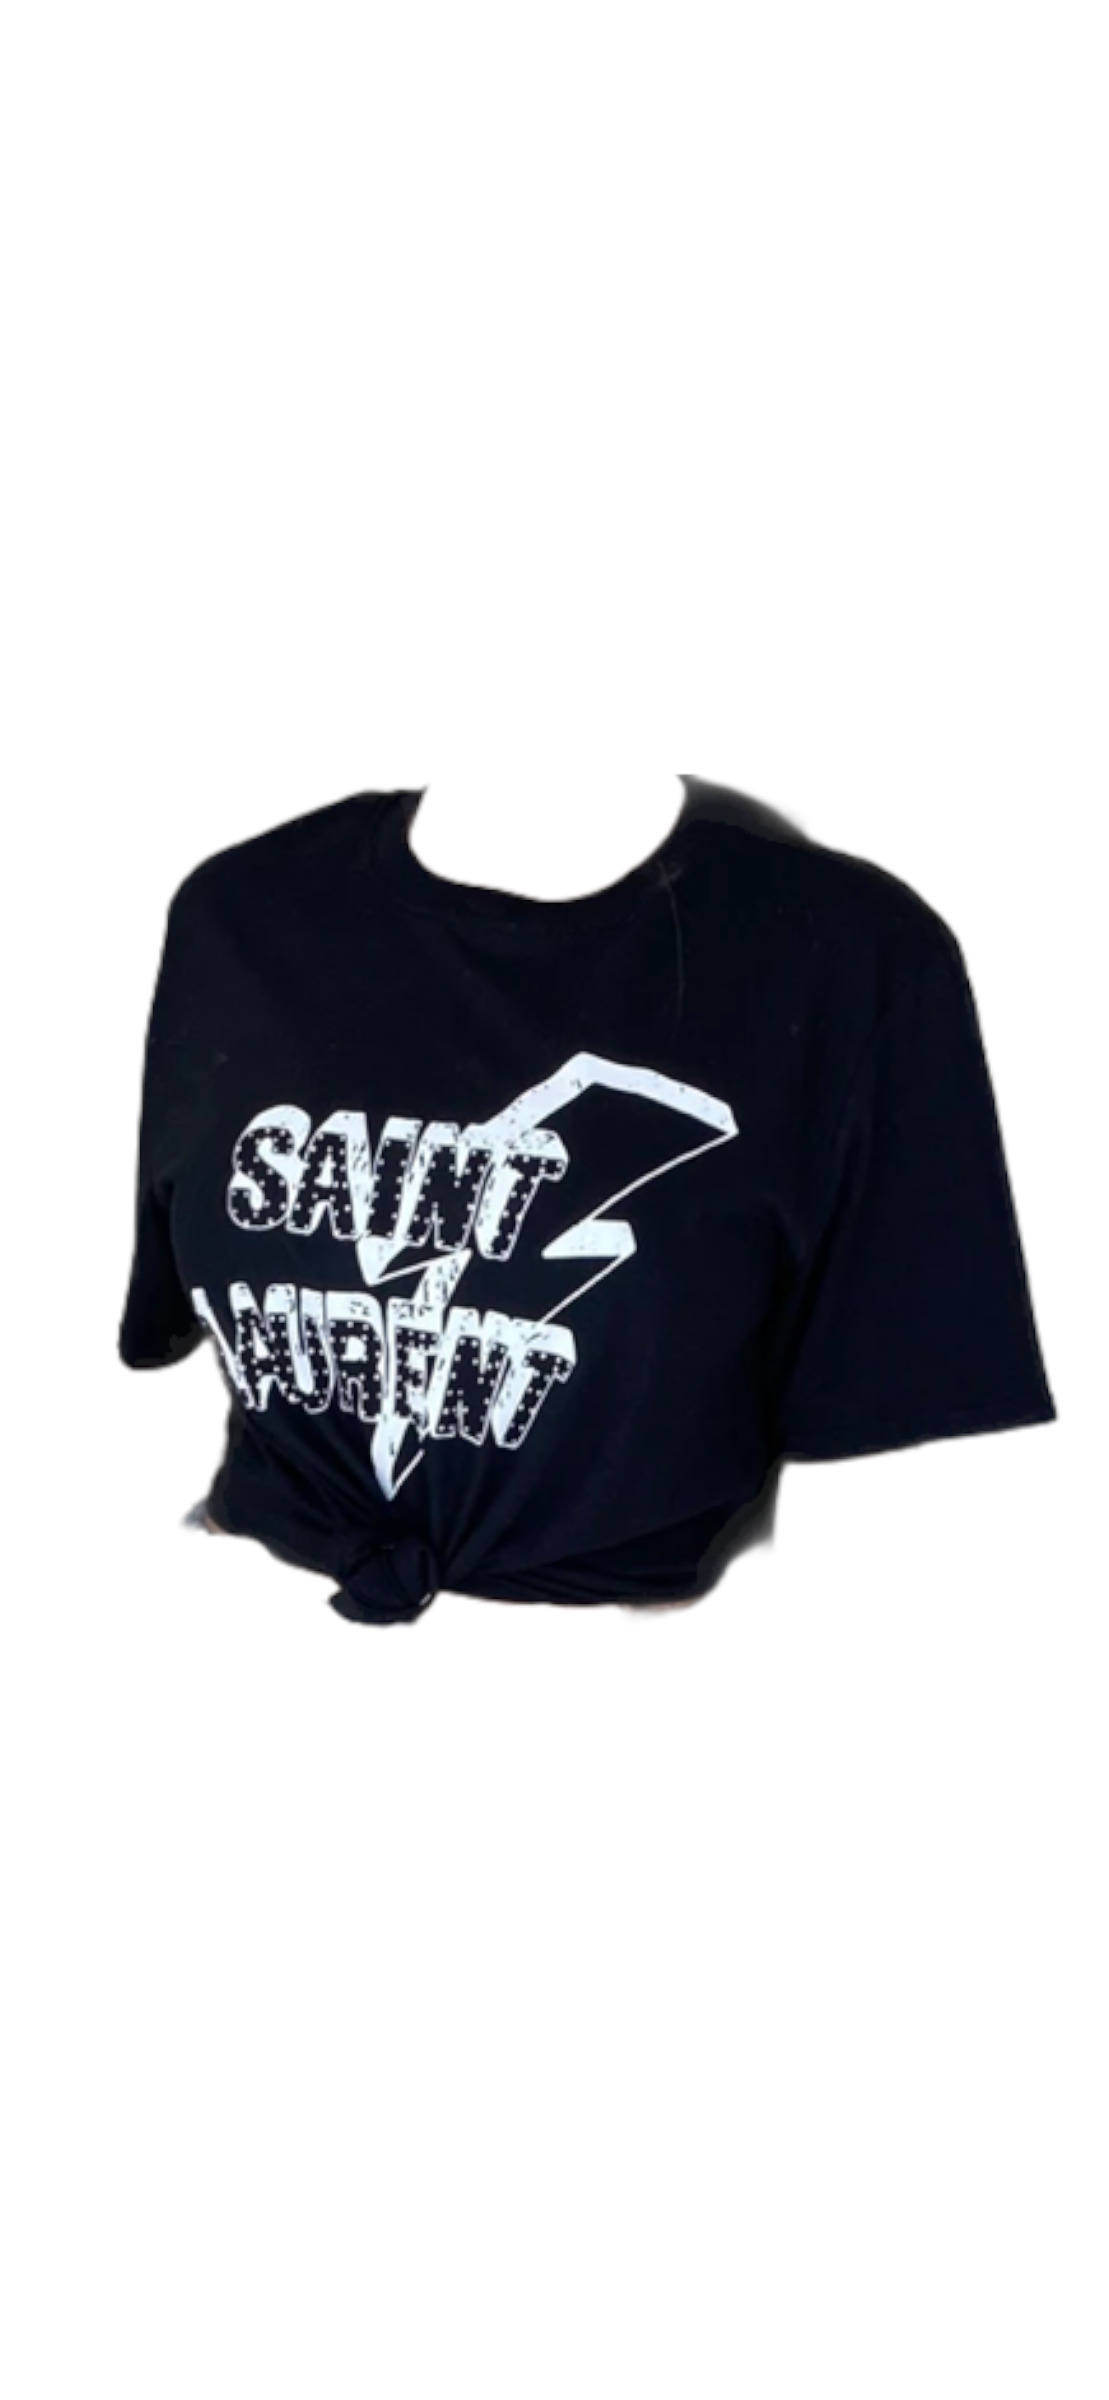 Saint t shirt